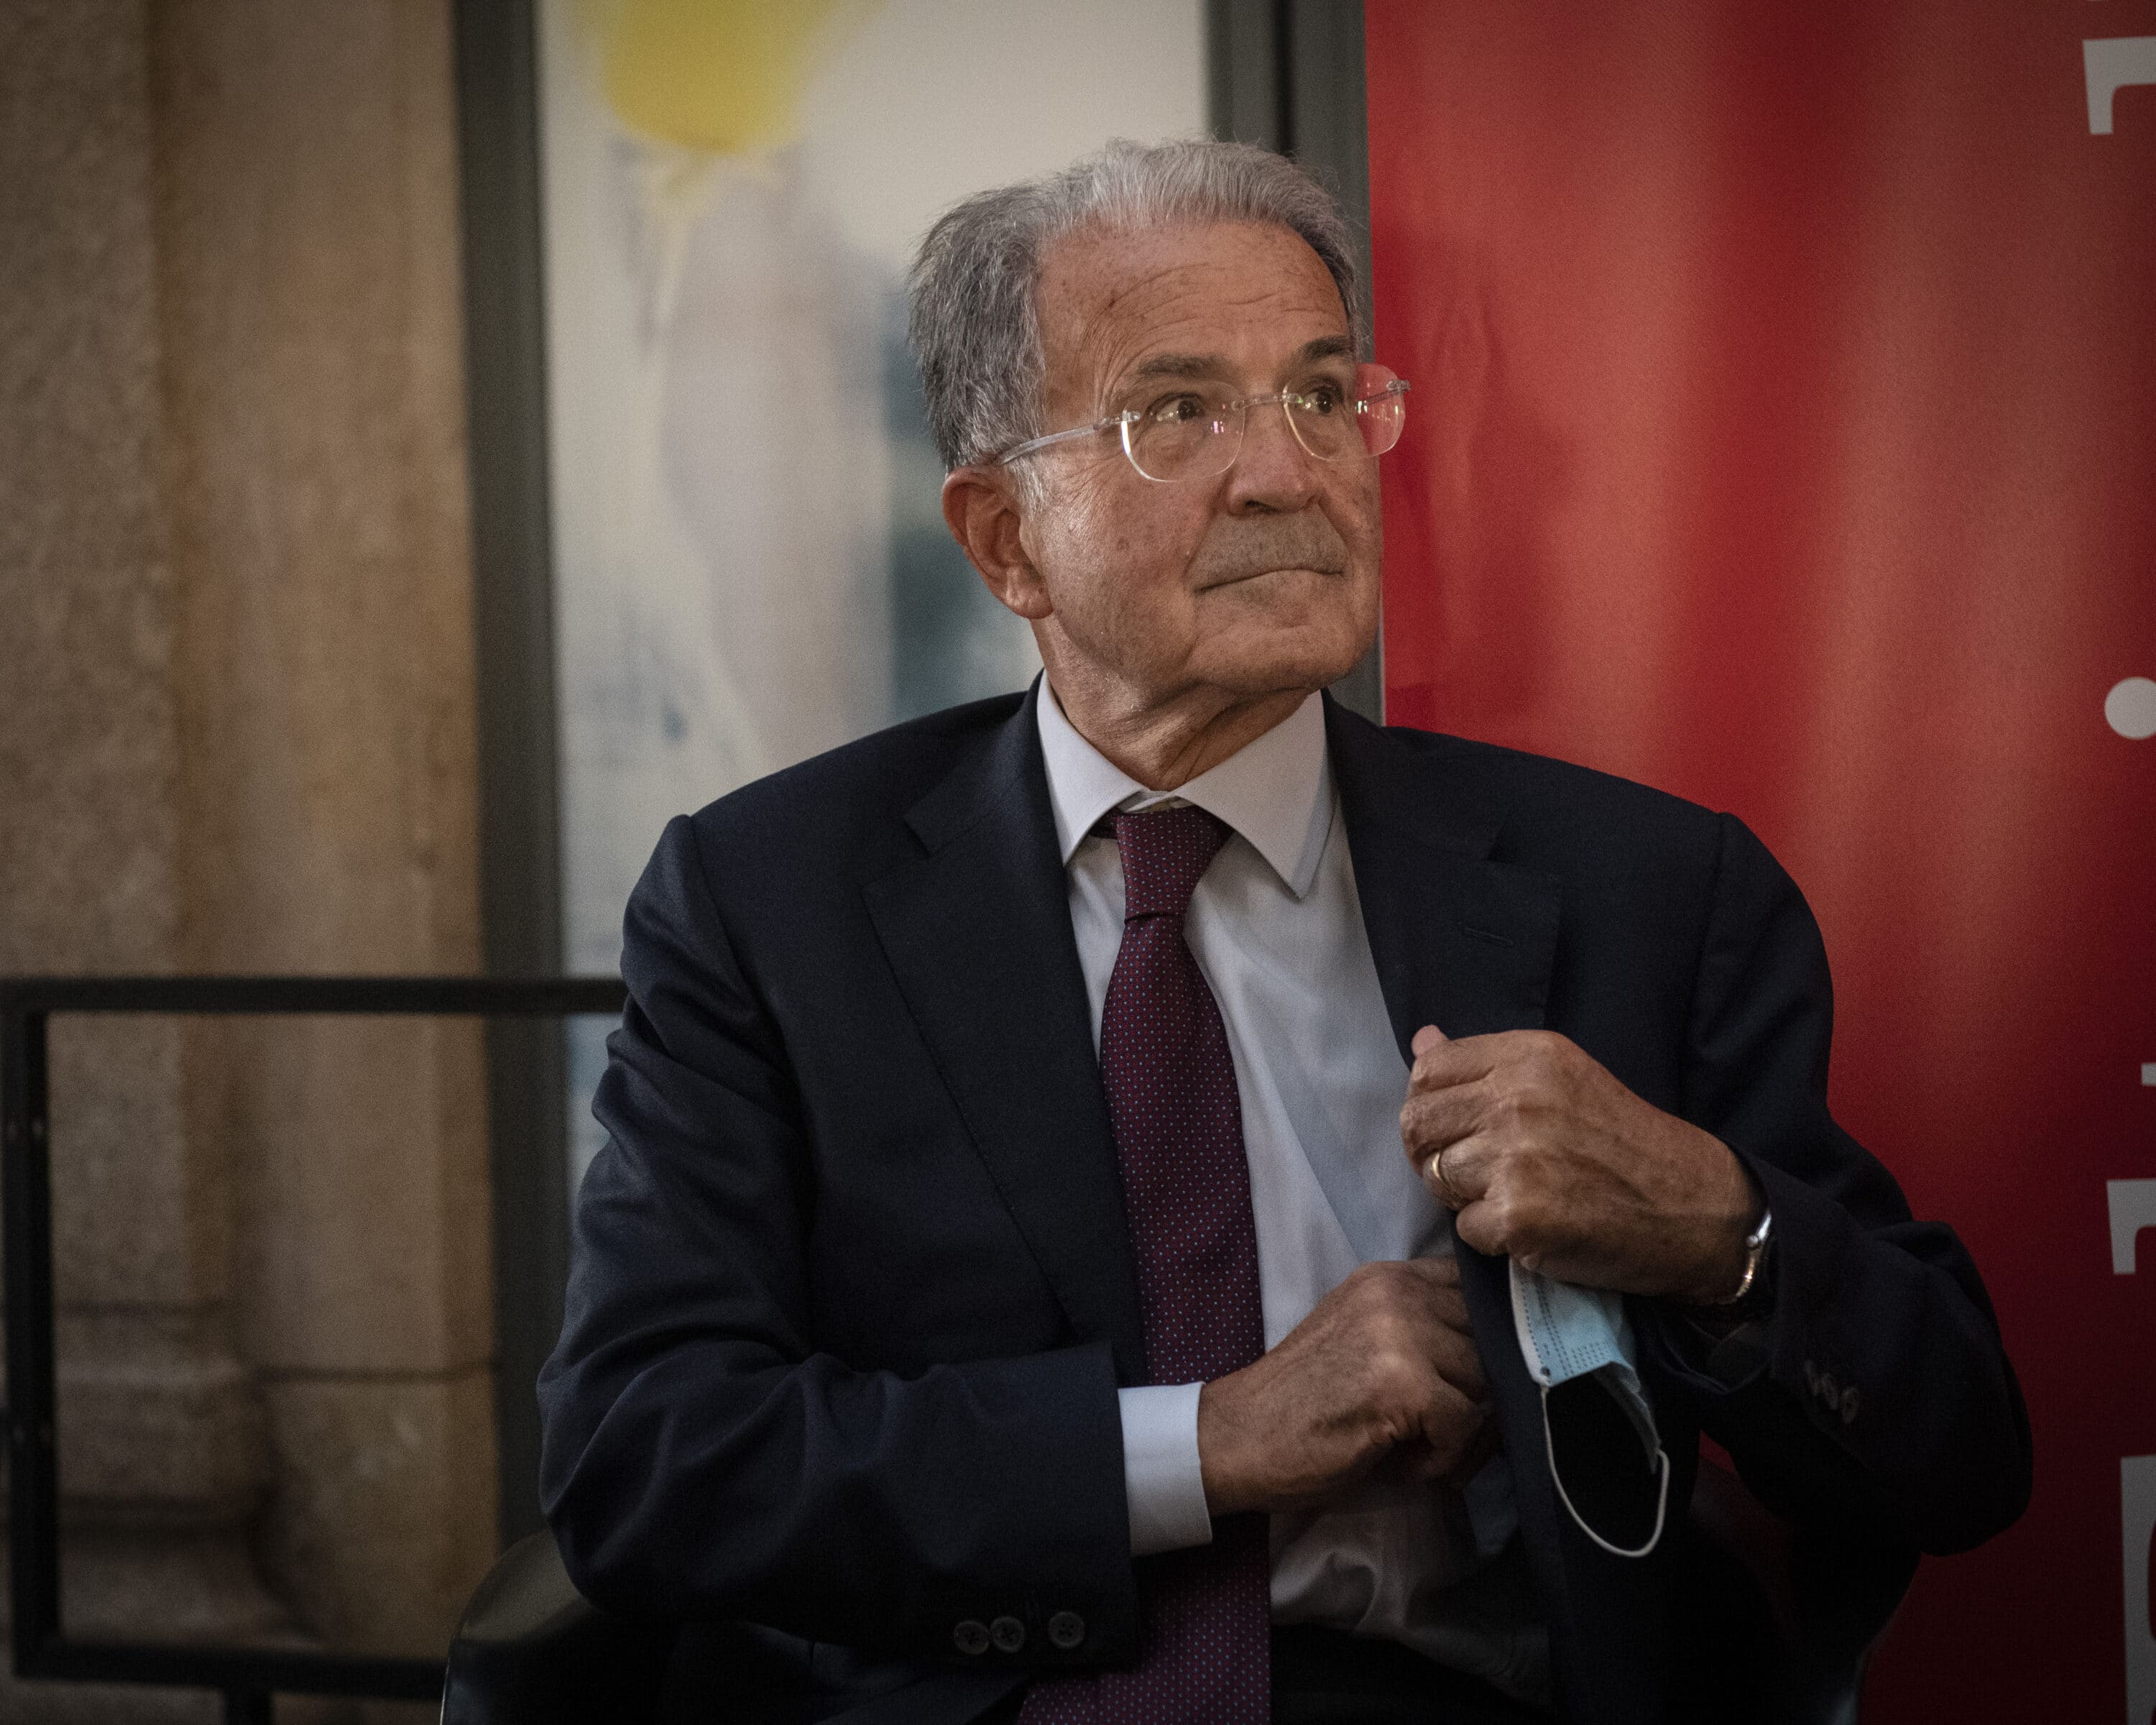 Prodi fa sua la battaglia sul salario minimo: “Se non viene approvato l’Italia deve vergognarsi”